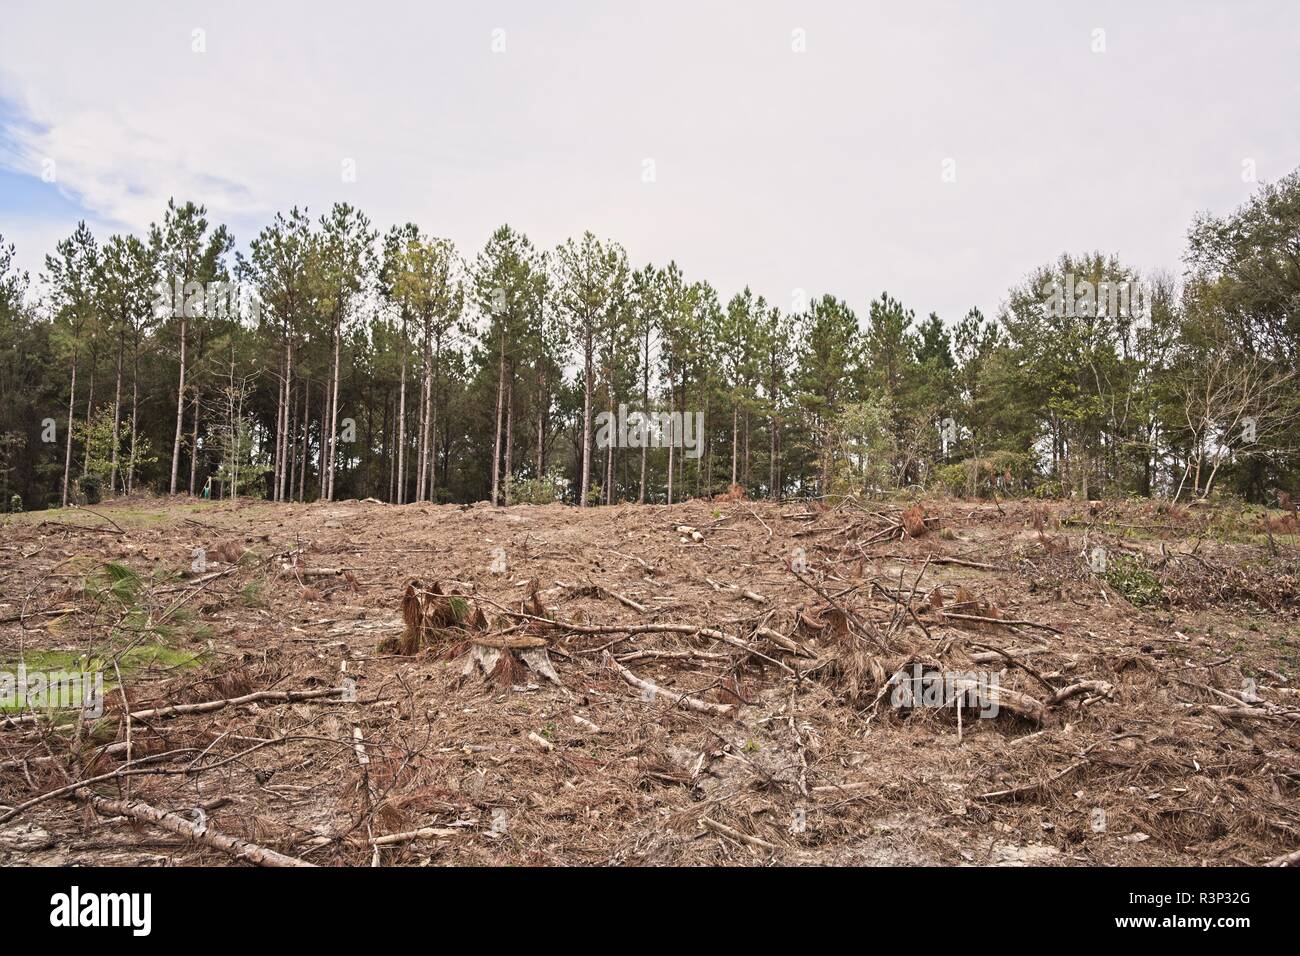 Cancella area di taglio di un southern pine tree farm e foreste nelle zone rurali di Alabama, Stati Uniti d'America. Foto Stock